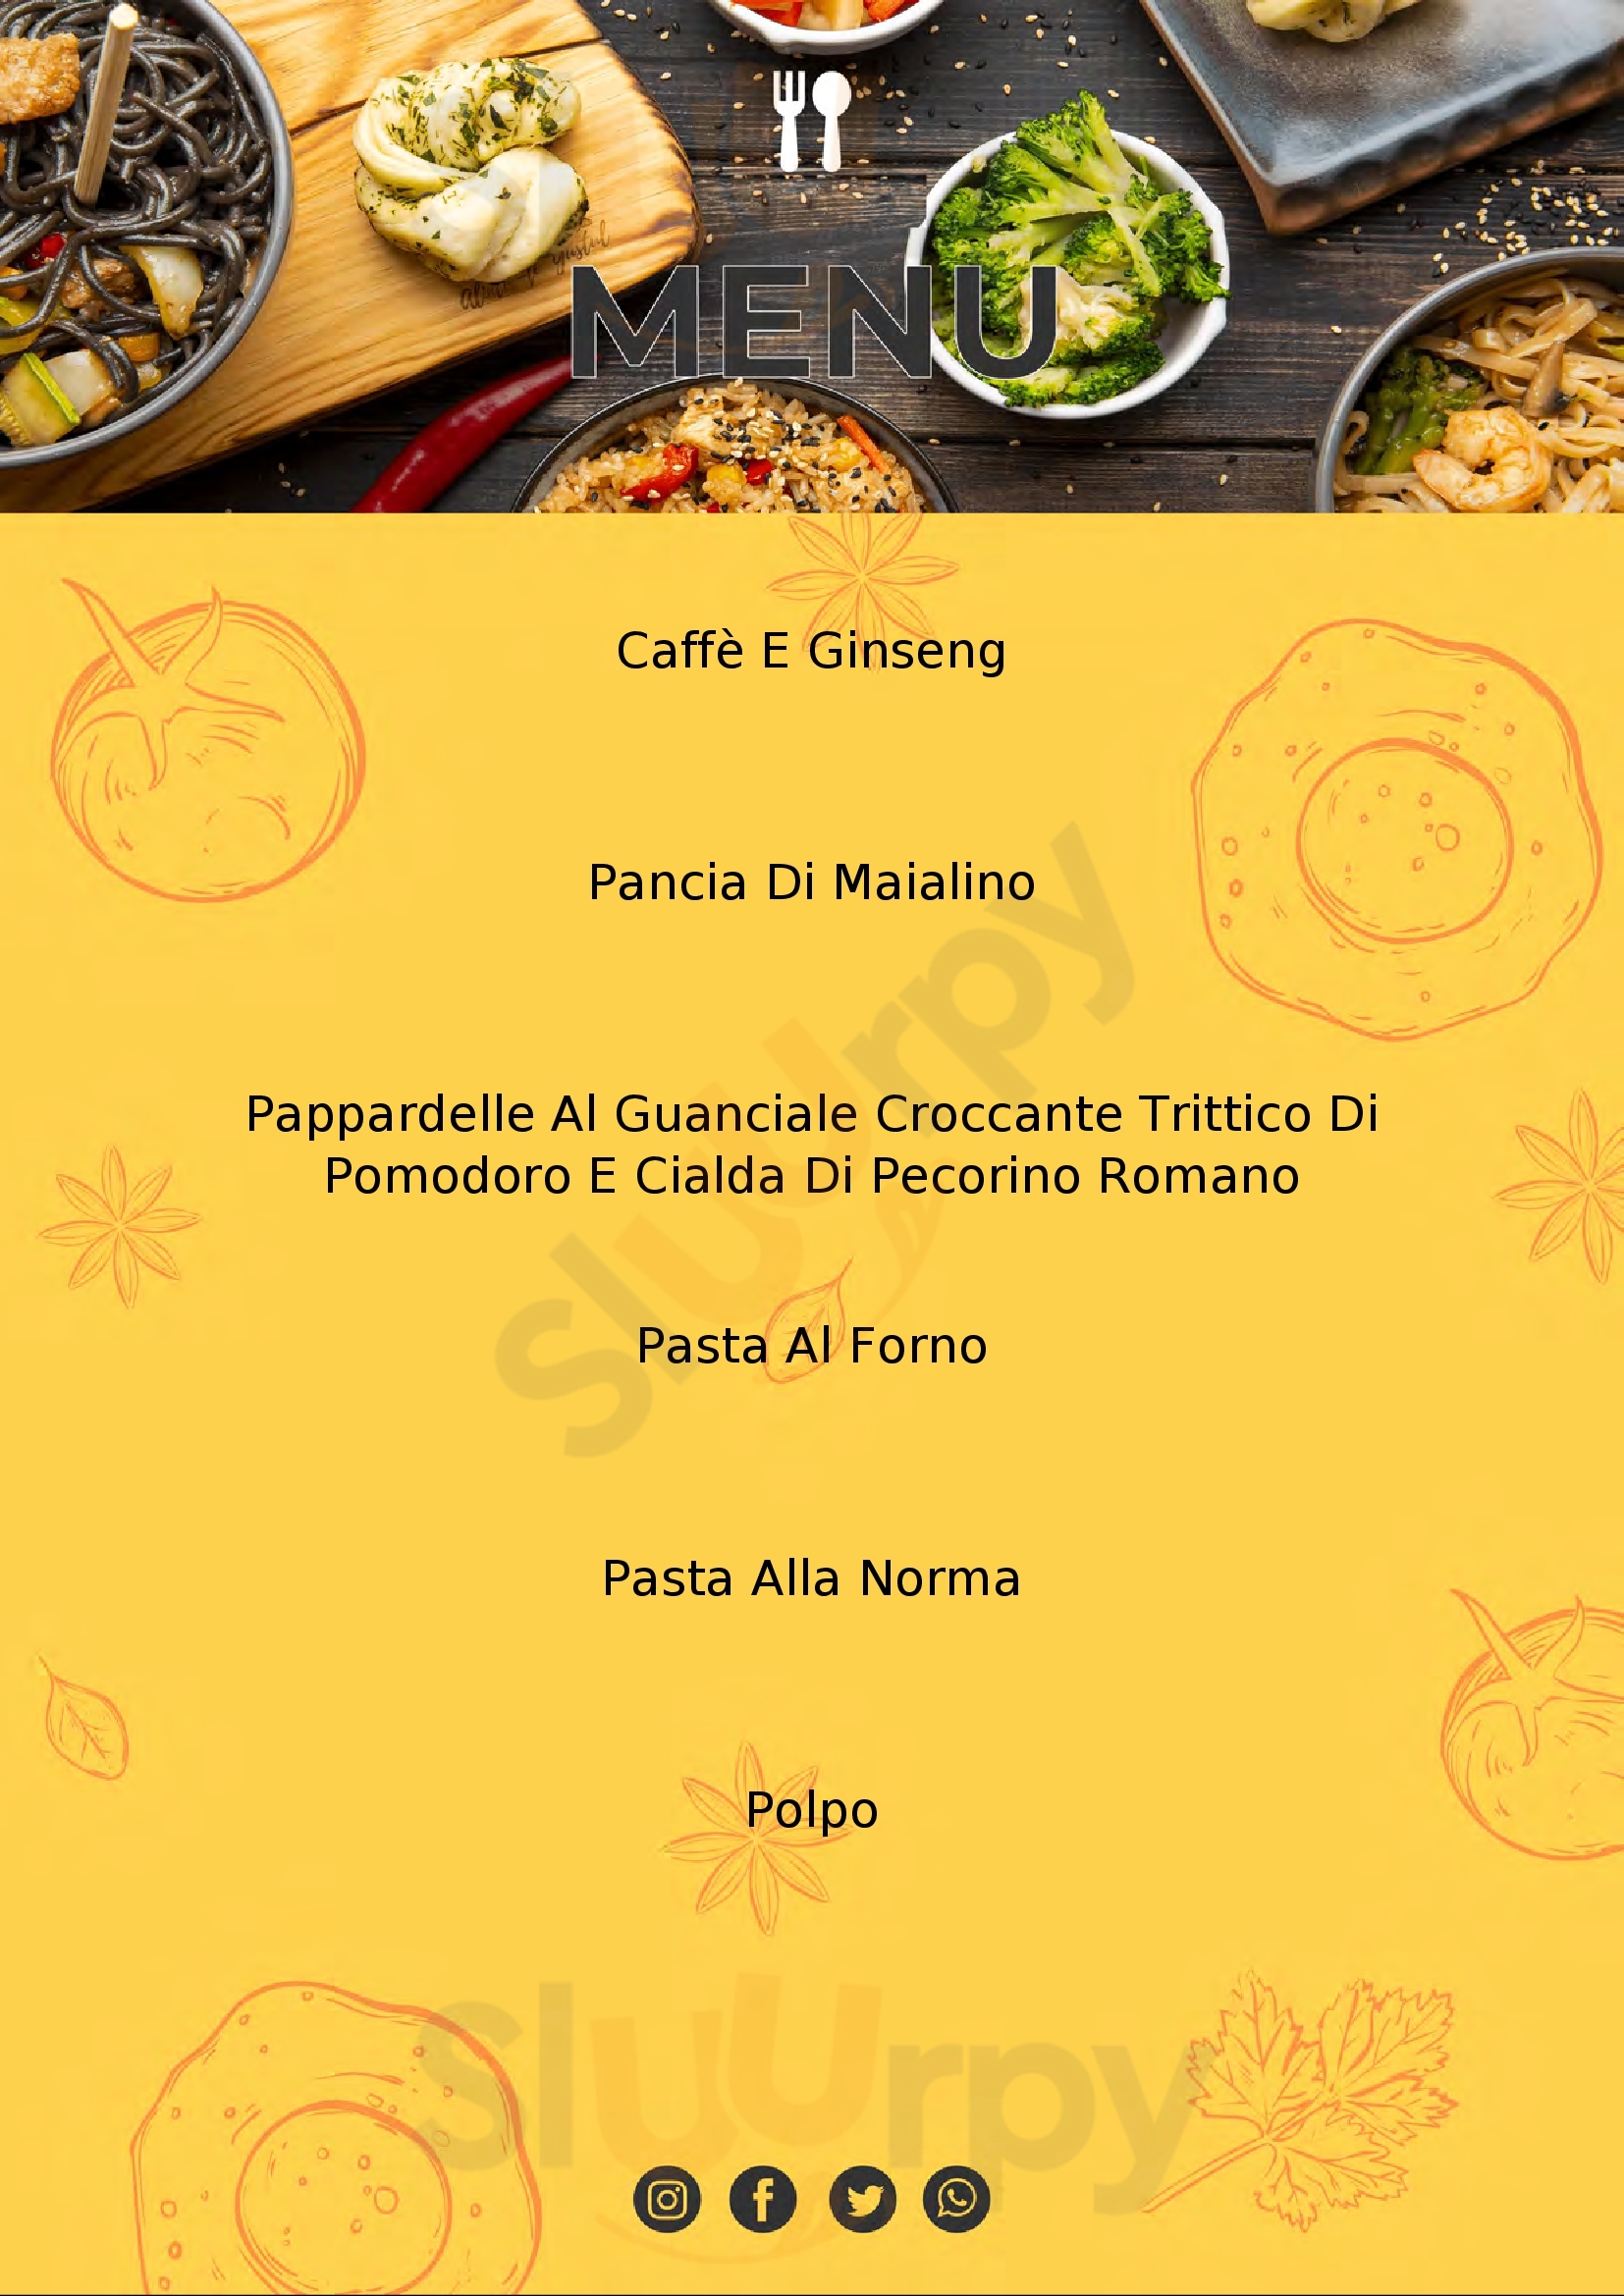 L'officina Drink & Restaurant Brescia menù 1 pagina